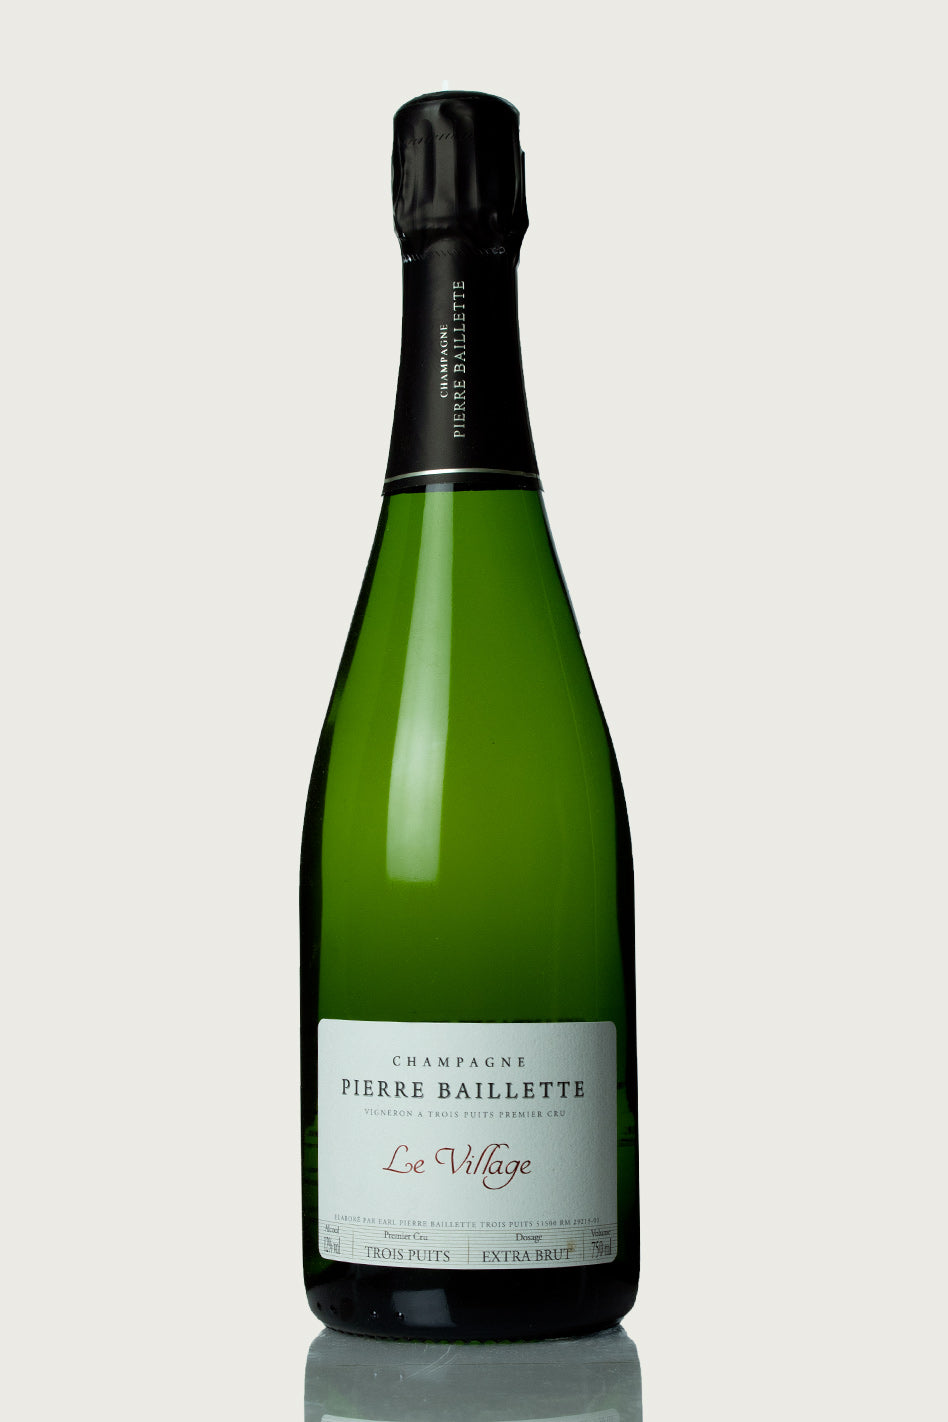 Pierre Baillette Champagne Brut 'Le Village' NV